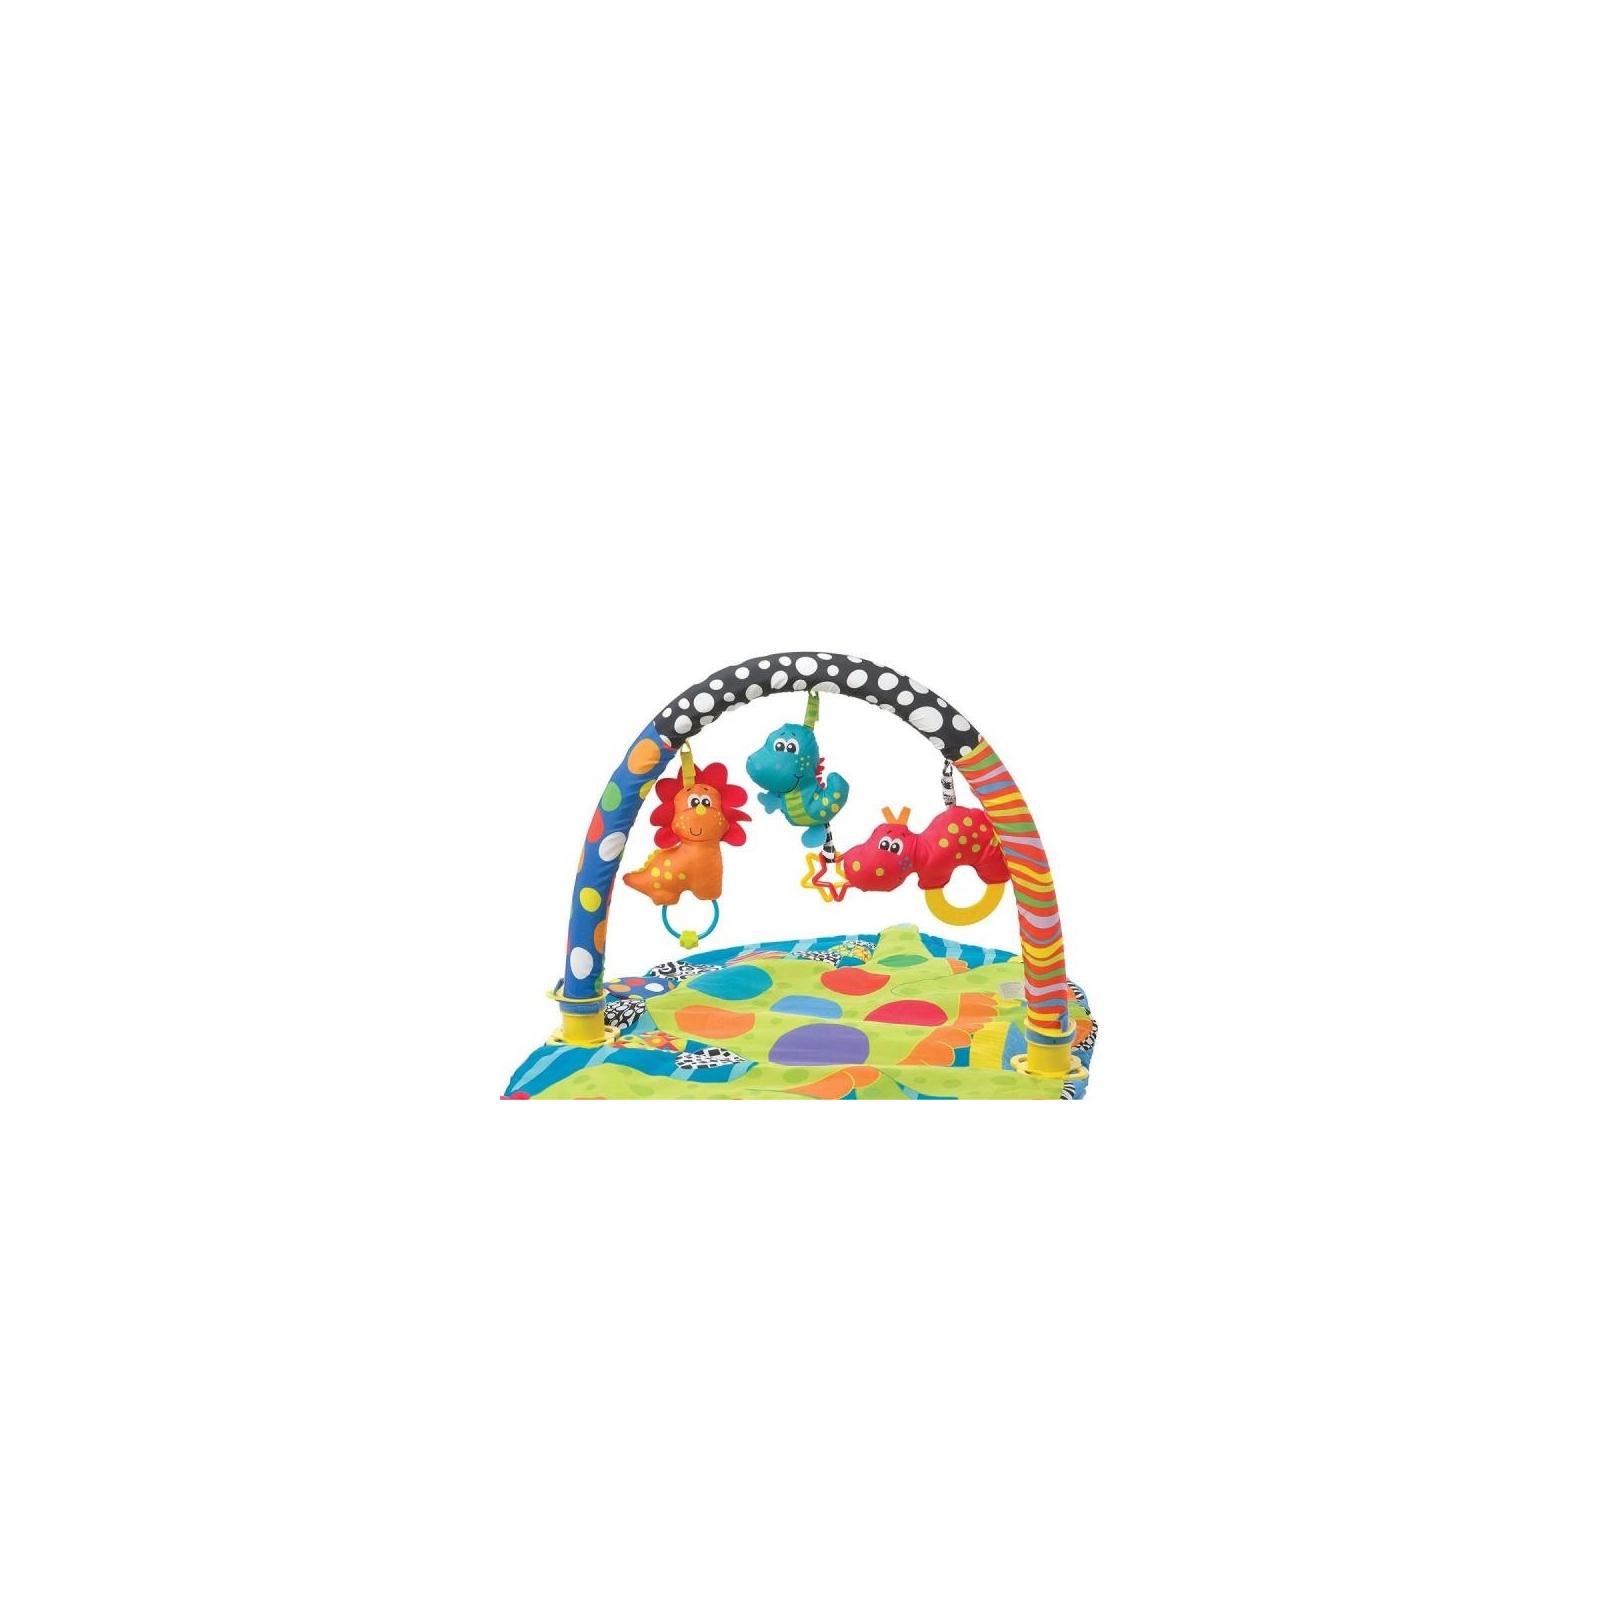 Дитячий килимок Діно Playgro (25244) зображення 2